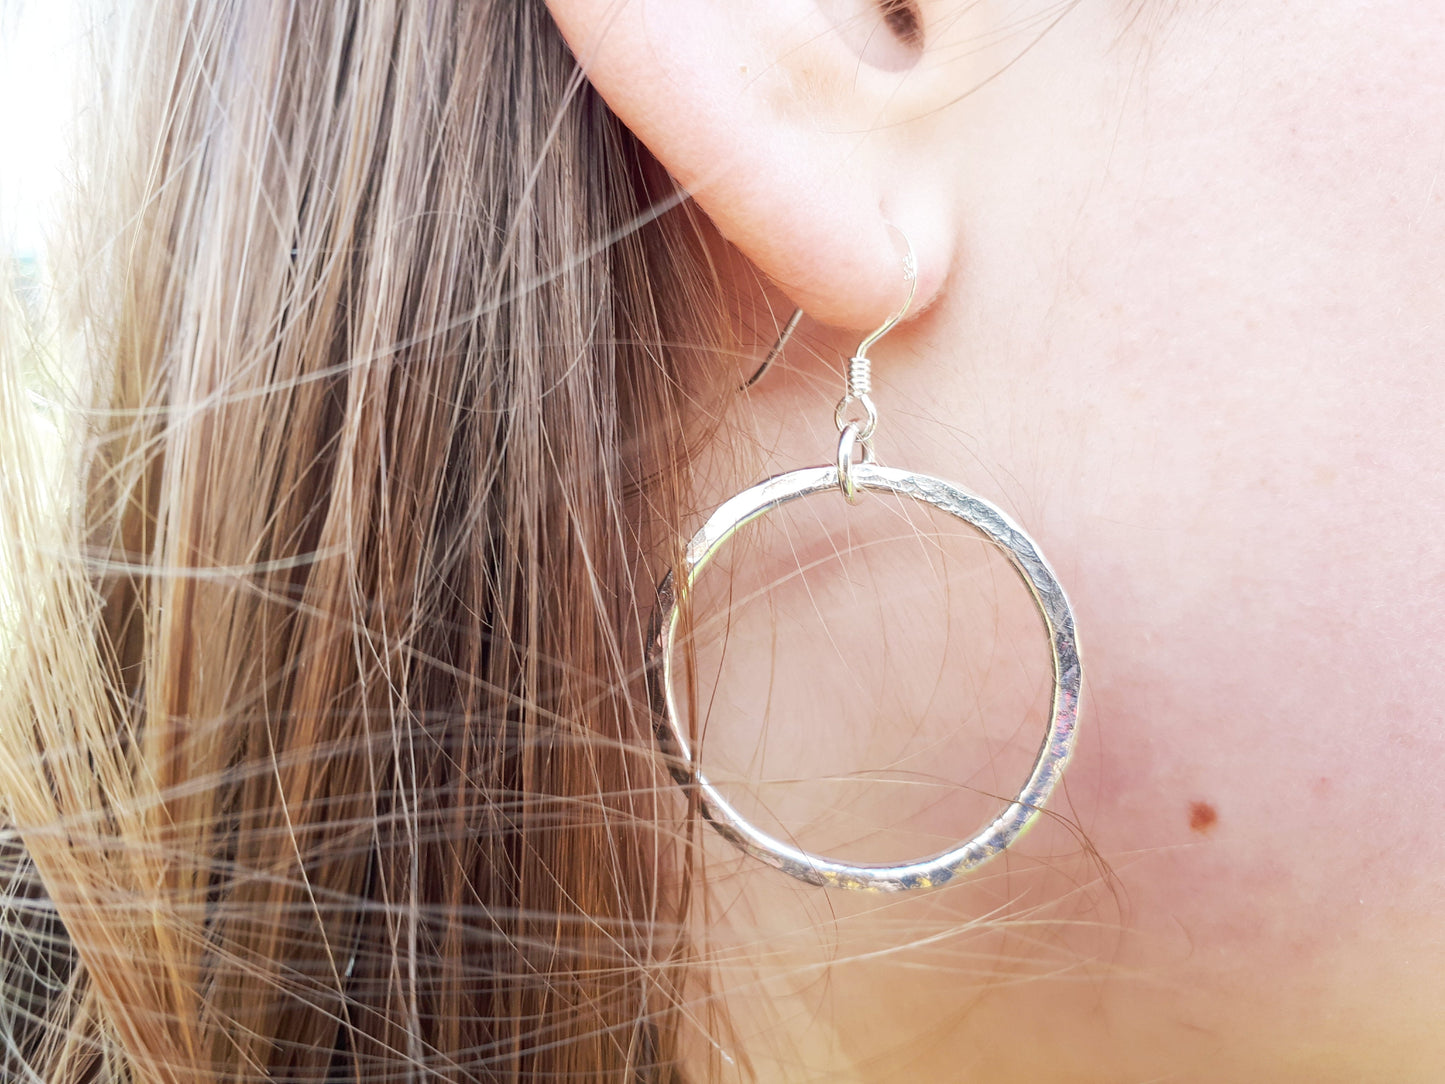 Pearl hoop earrings in sterling silver.